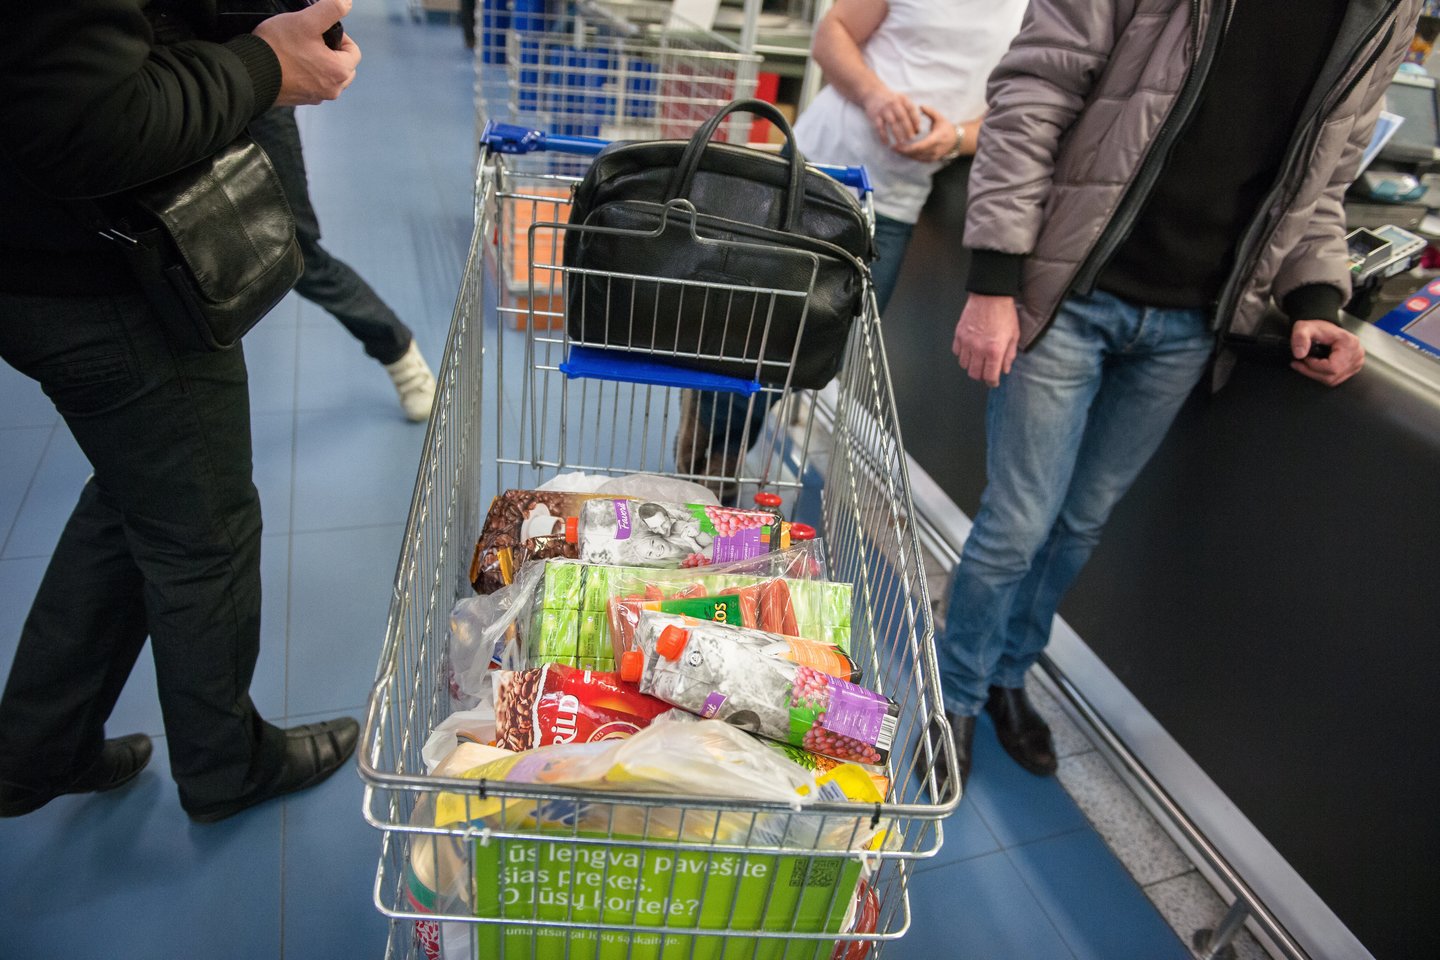 Maisto produktų kainoms pasiekus naujus rekordus, socialdemokratai piktinasi Vyriausybės abejingumu.<br>J.Stacevičiaus nuotr.